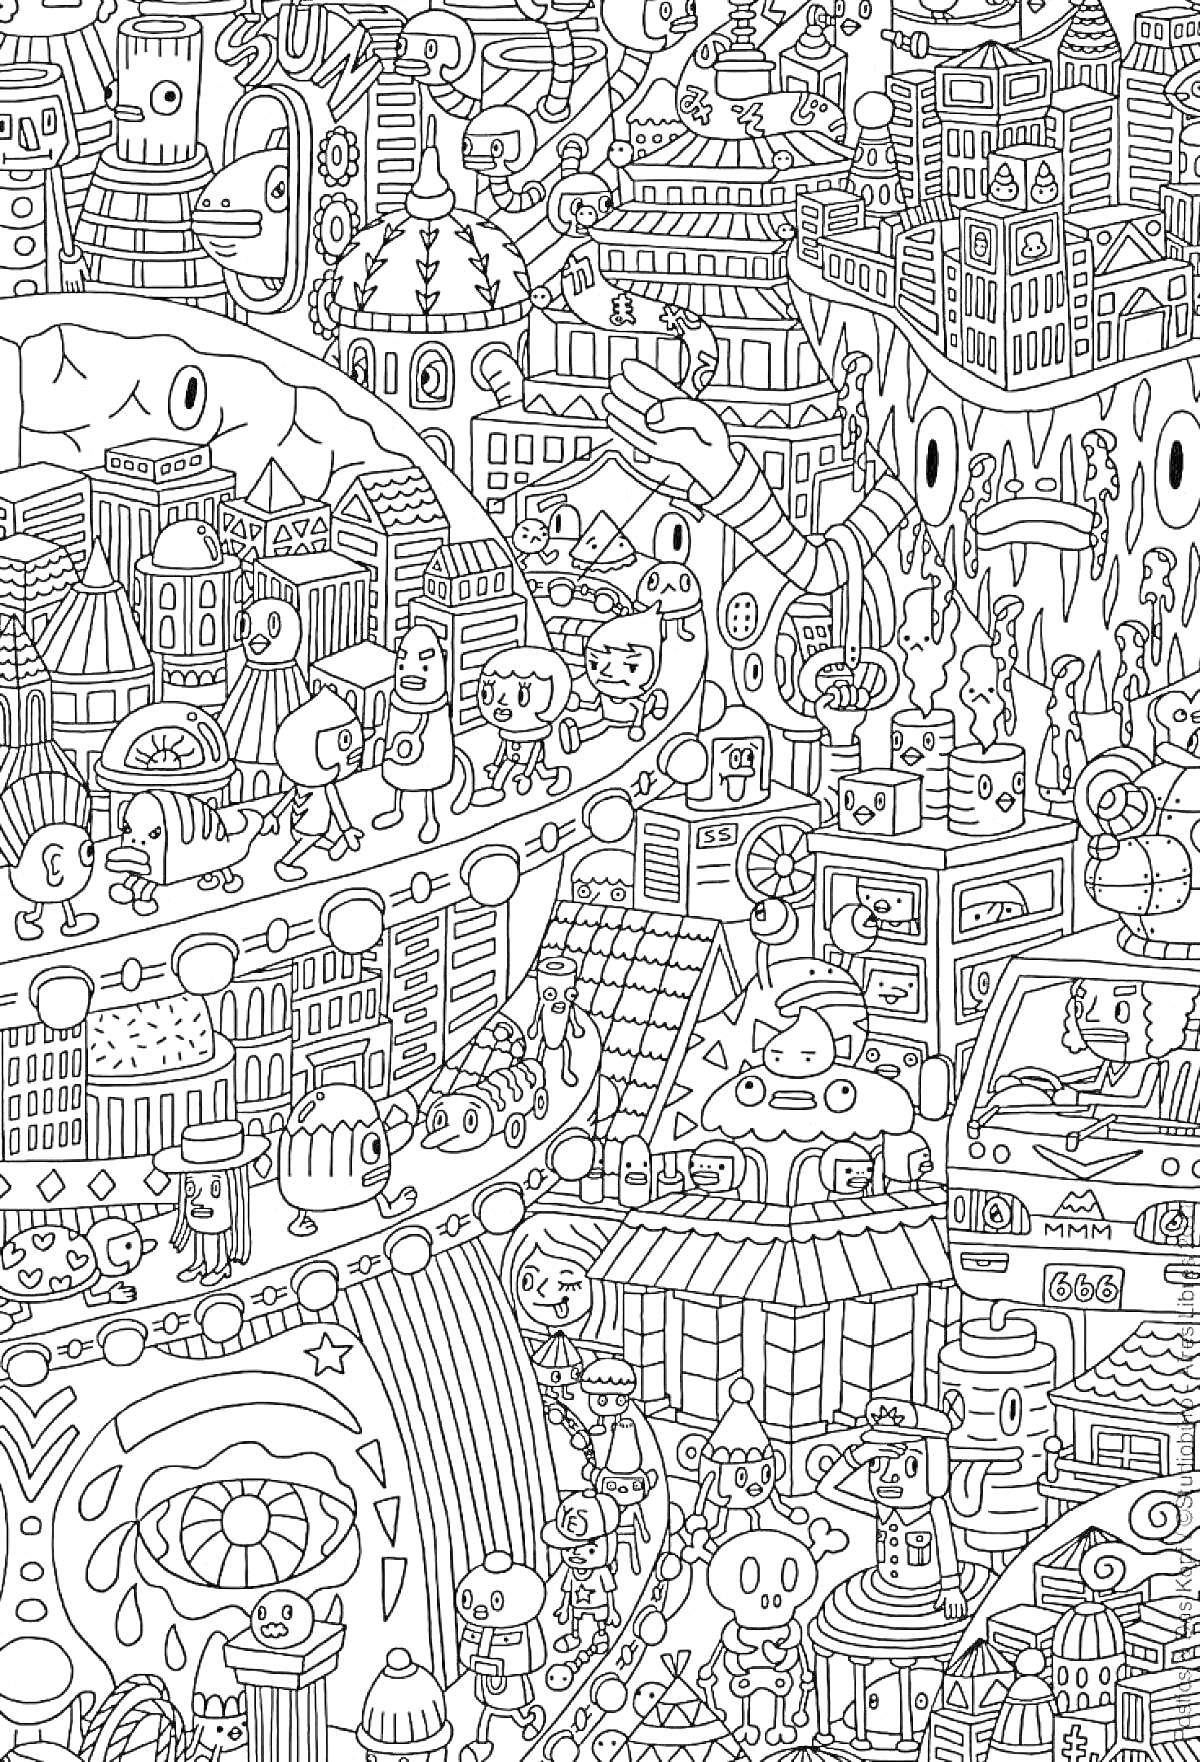 Раскраска Городская жизнь. Многие здания и конструкции, транспорт, персонажи и различные мелкие детали.